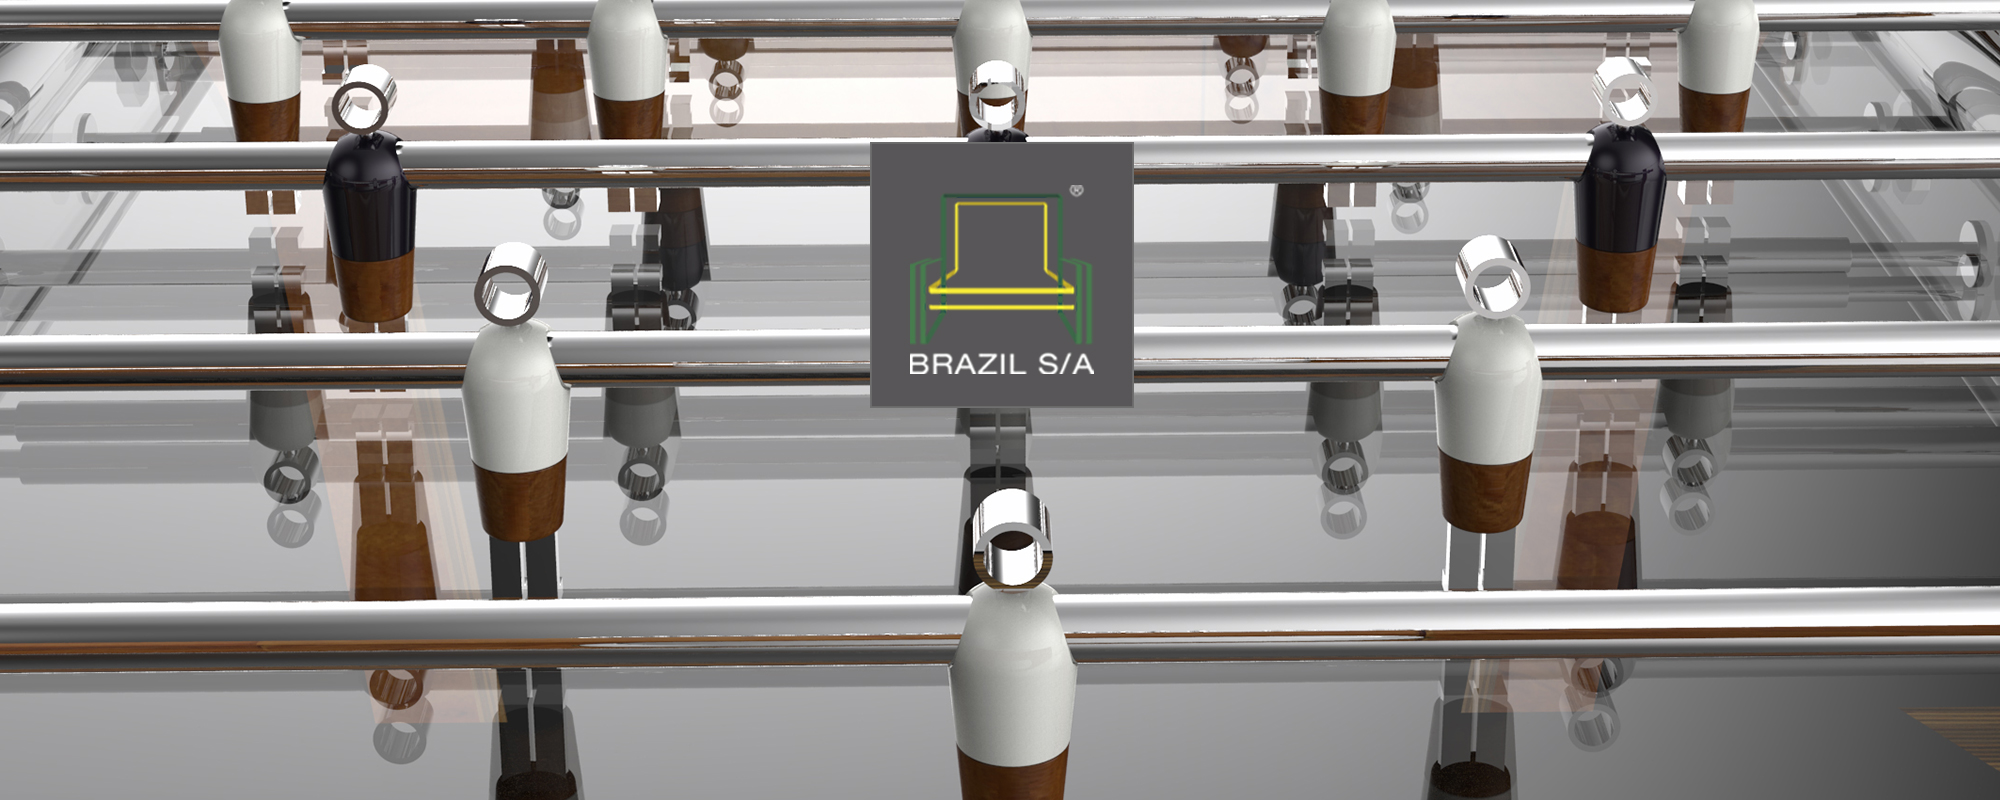 Banner padrão do Brazil S/A